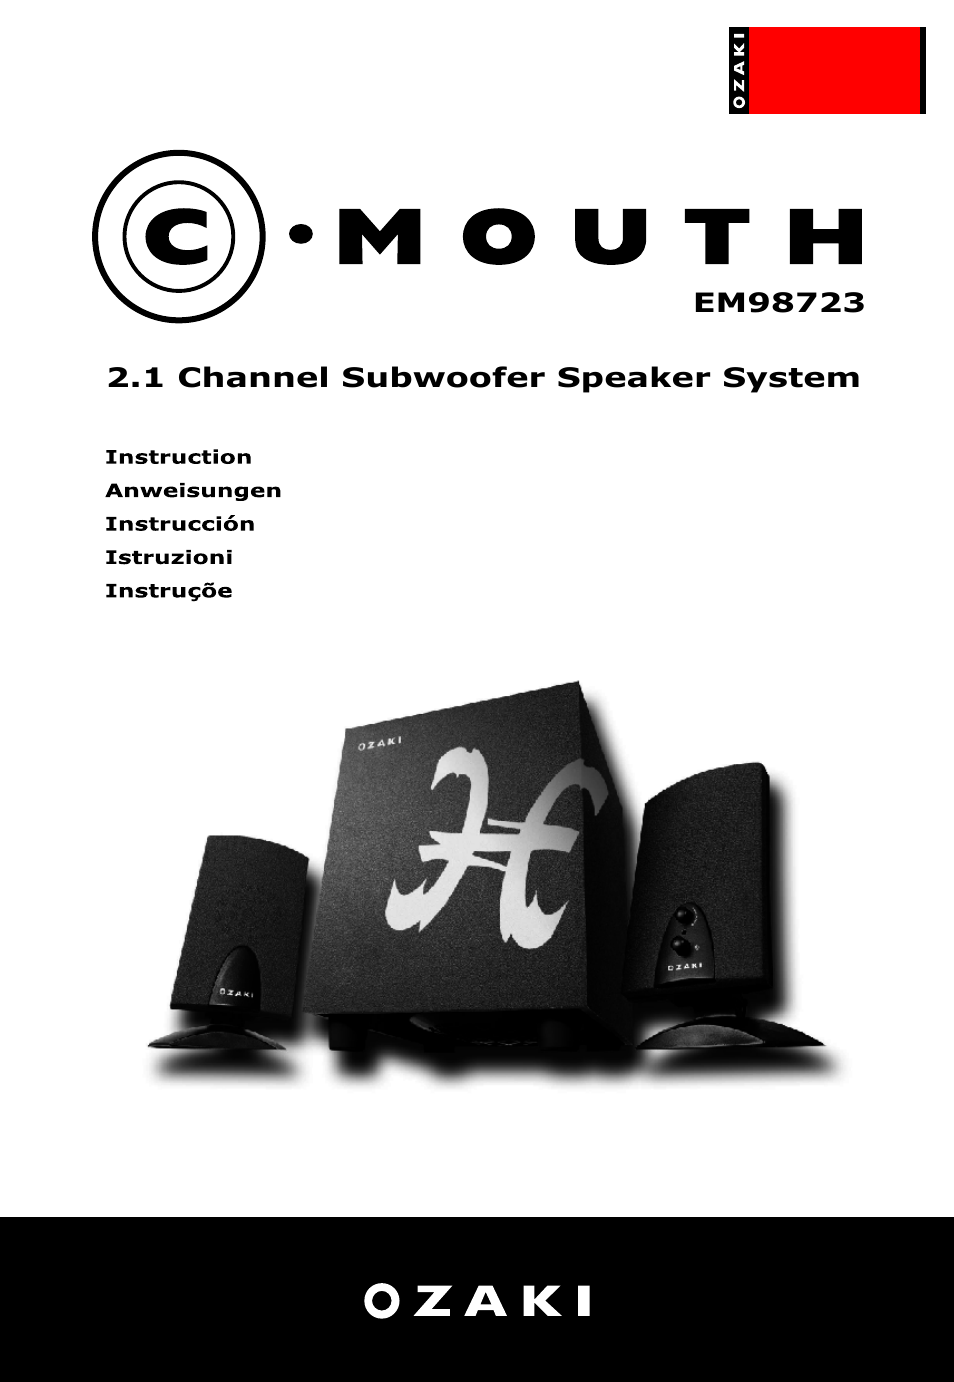 C-Mouth EM98723